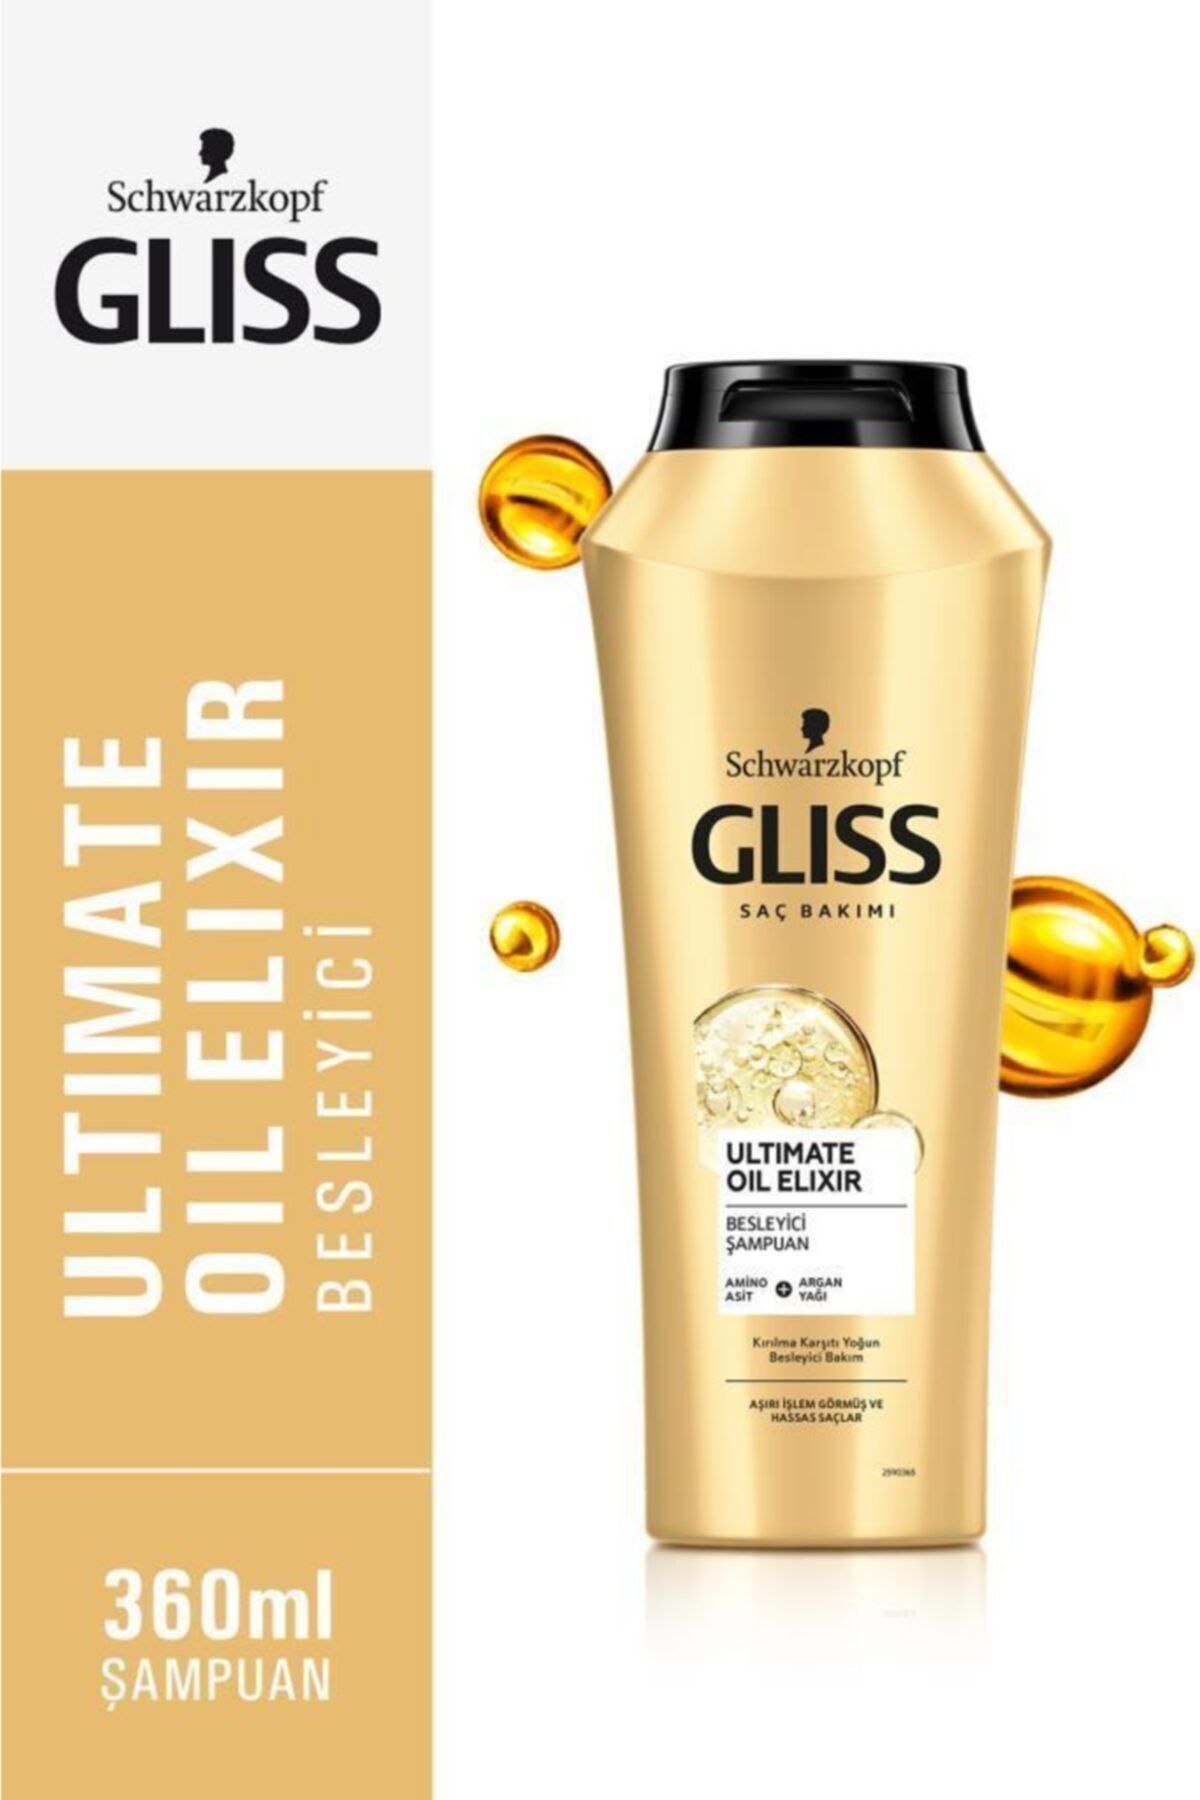 Gliss Ultimate Oil Elixir Besleyici Şampuan - Aminoasit Ve Argan Yağı Ile 360 ml